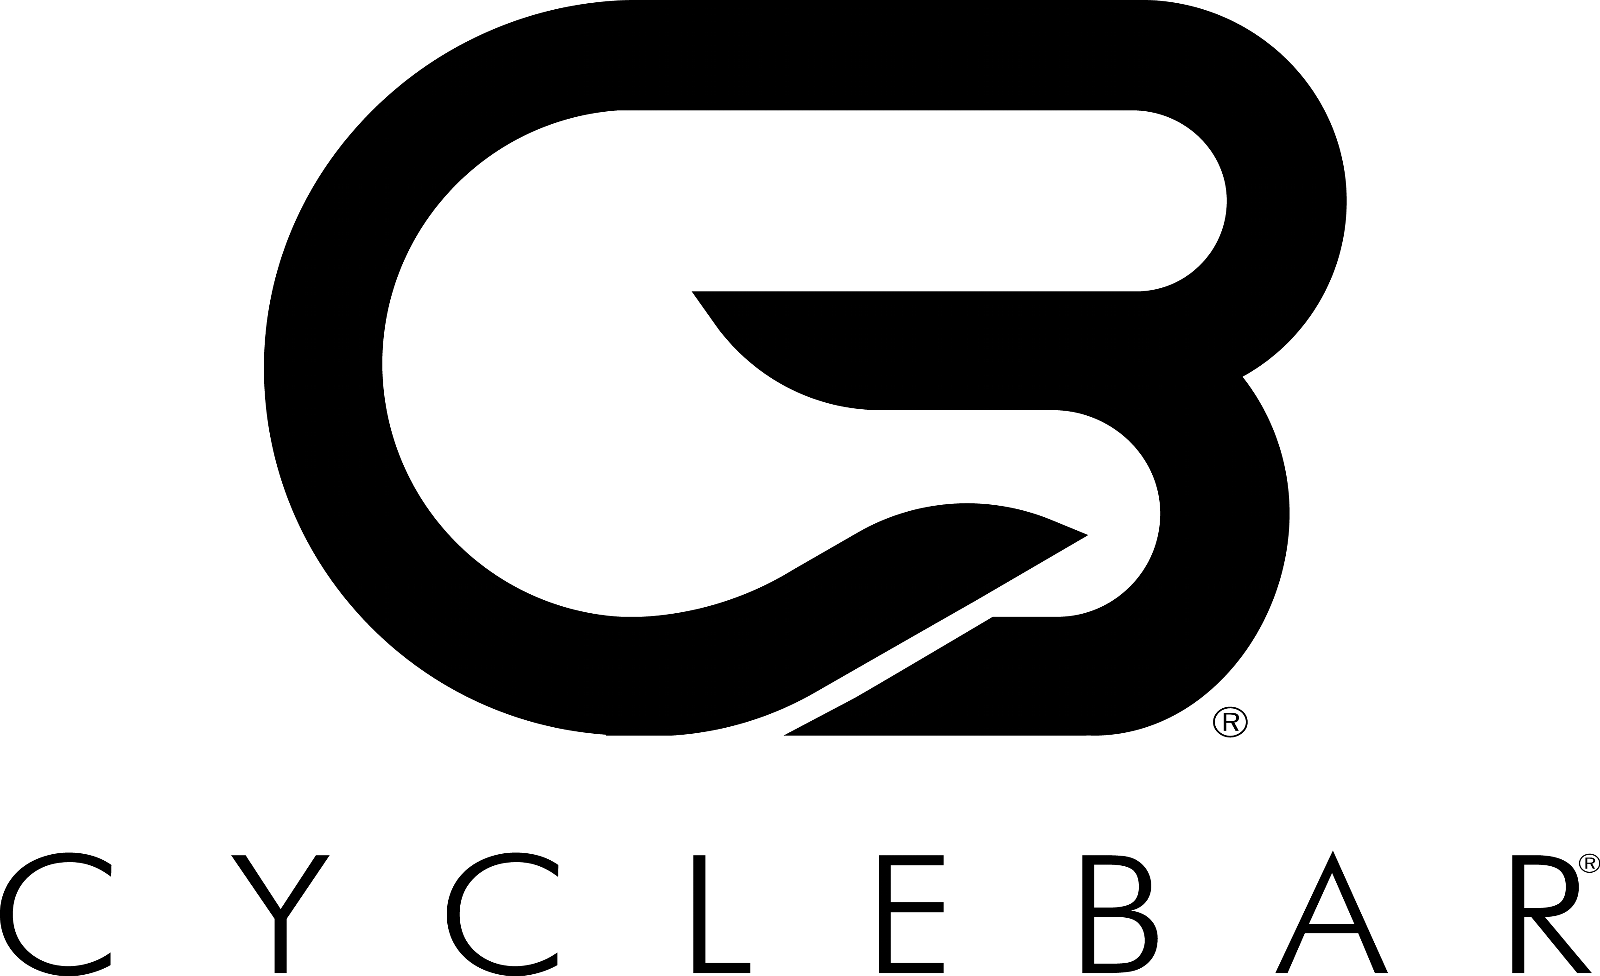 Cyclebar logo